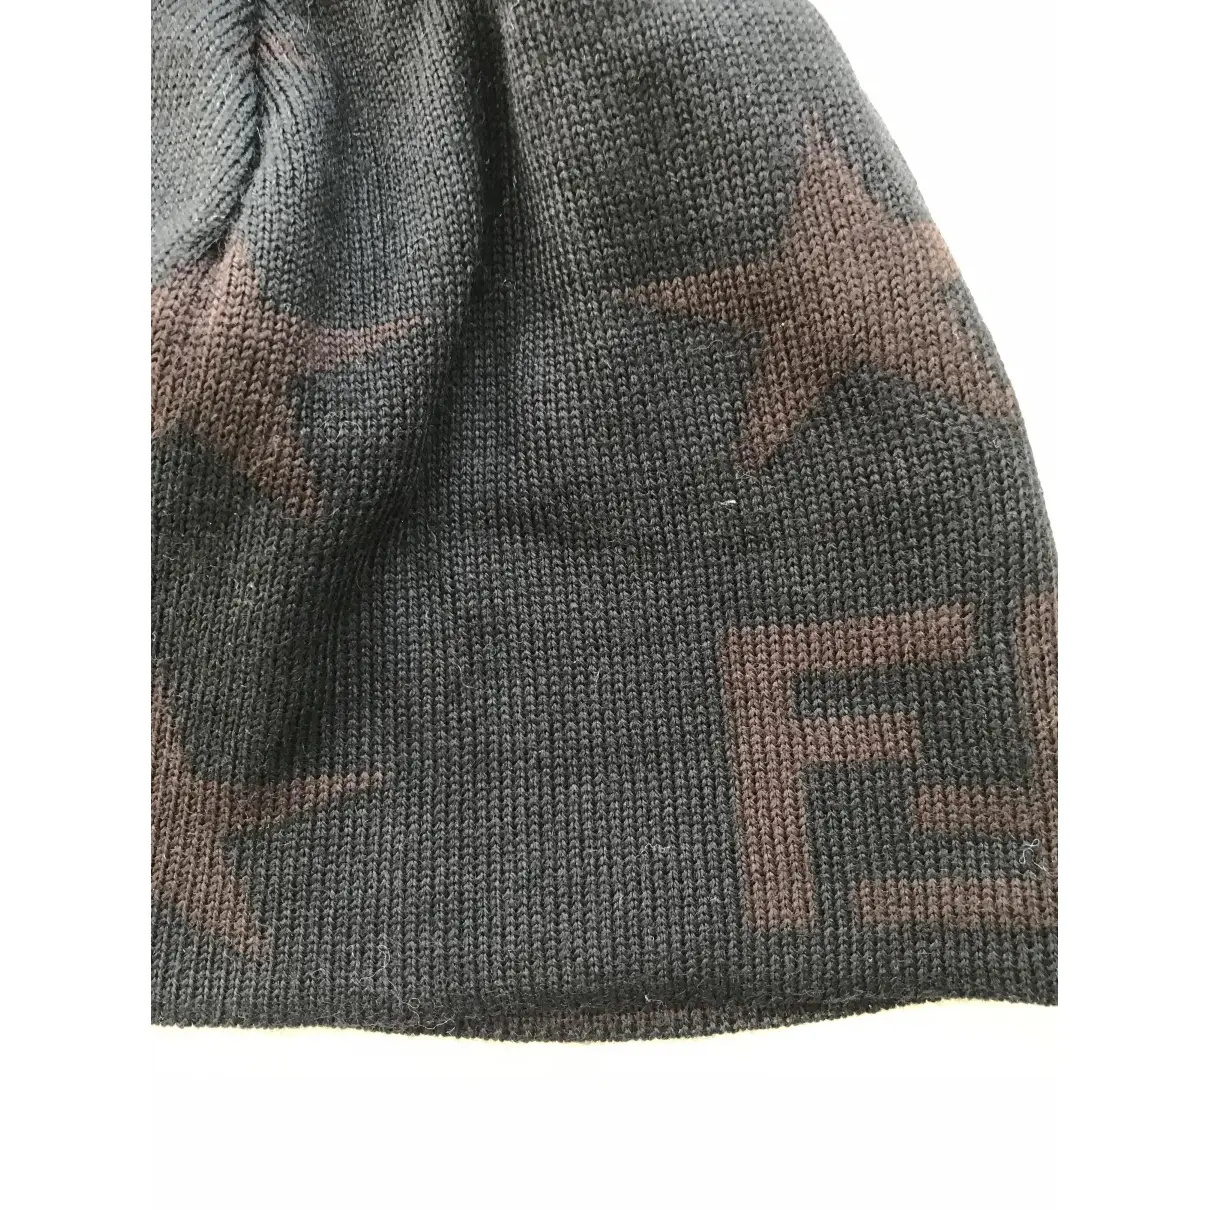 Buy Fendi Wool hat online